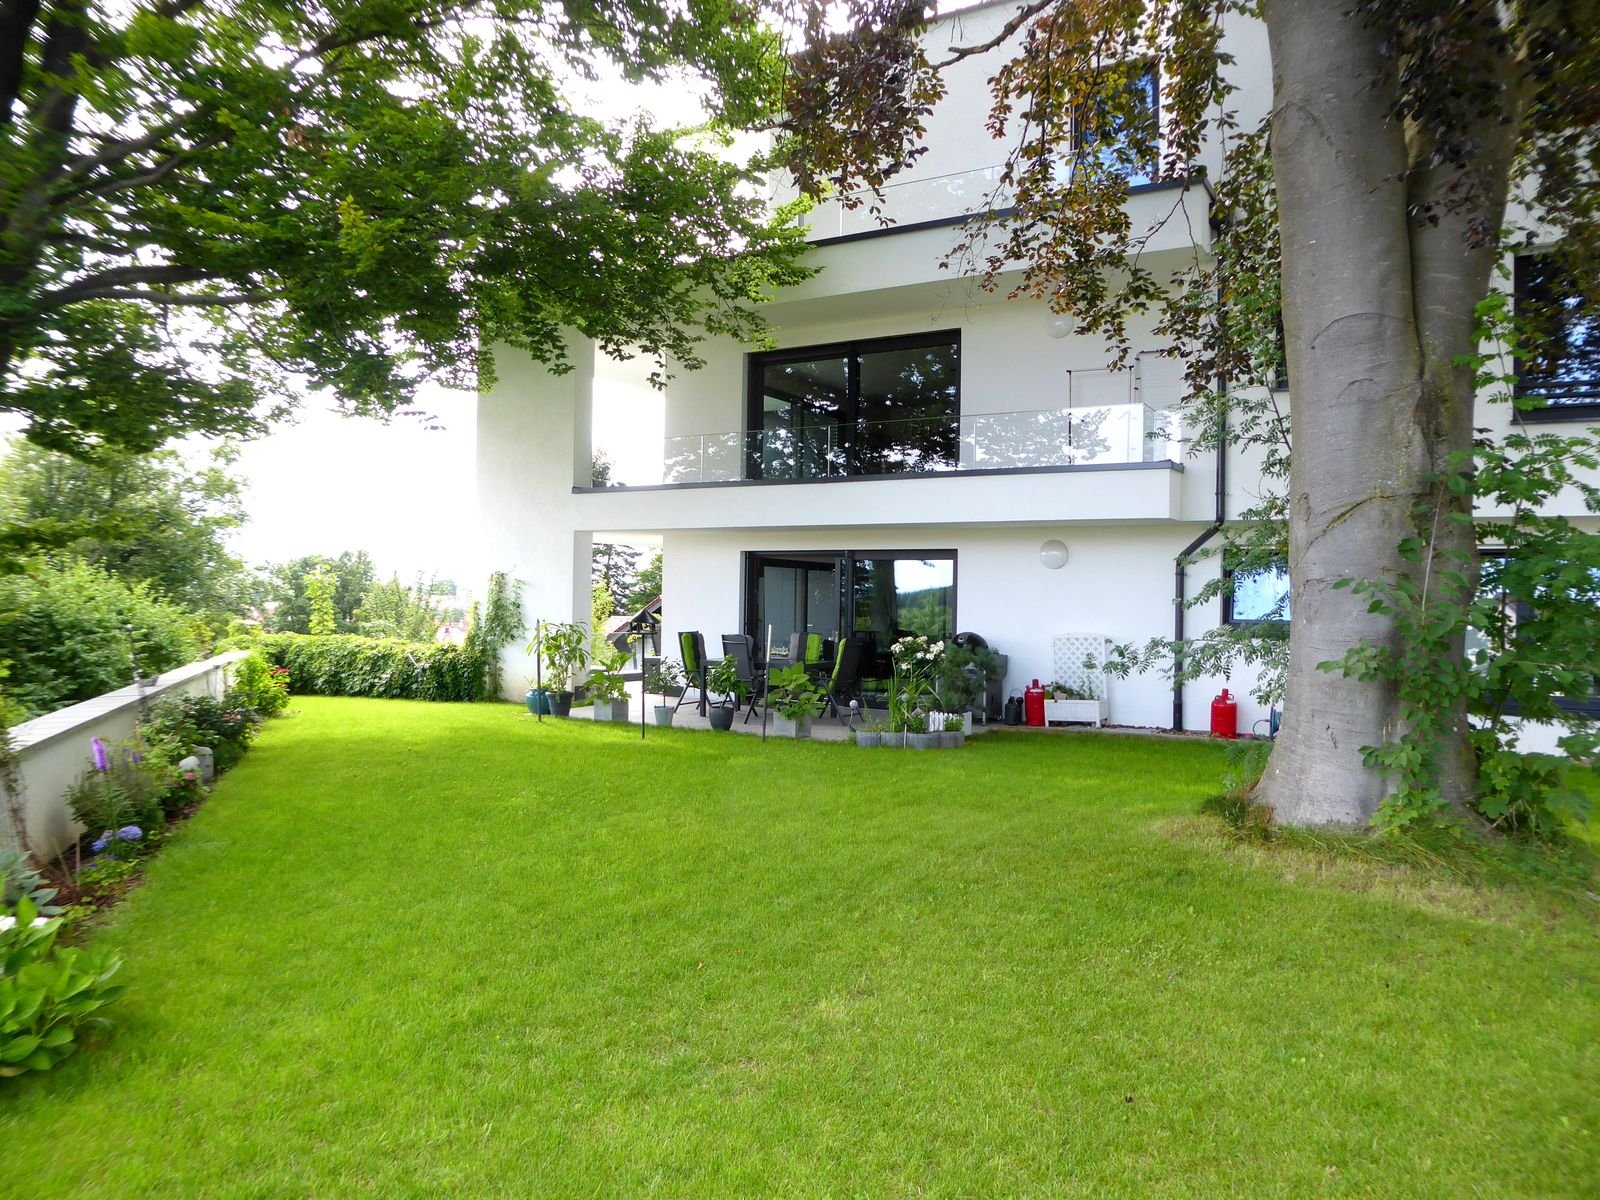 Exklusiv ausgestattete 3,5-Zimmer-Wohnung mit Balkon, Terrasse und Garten in Senden/Wullenstetten.